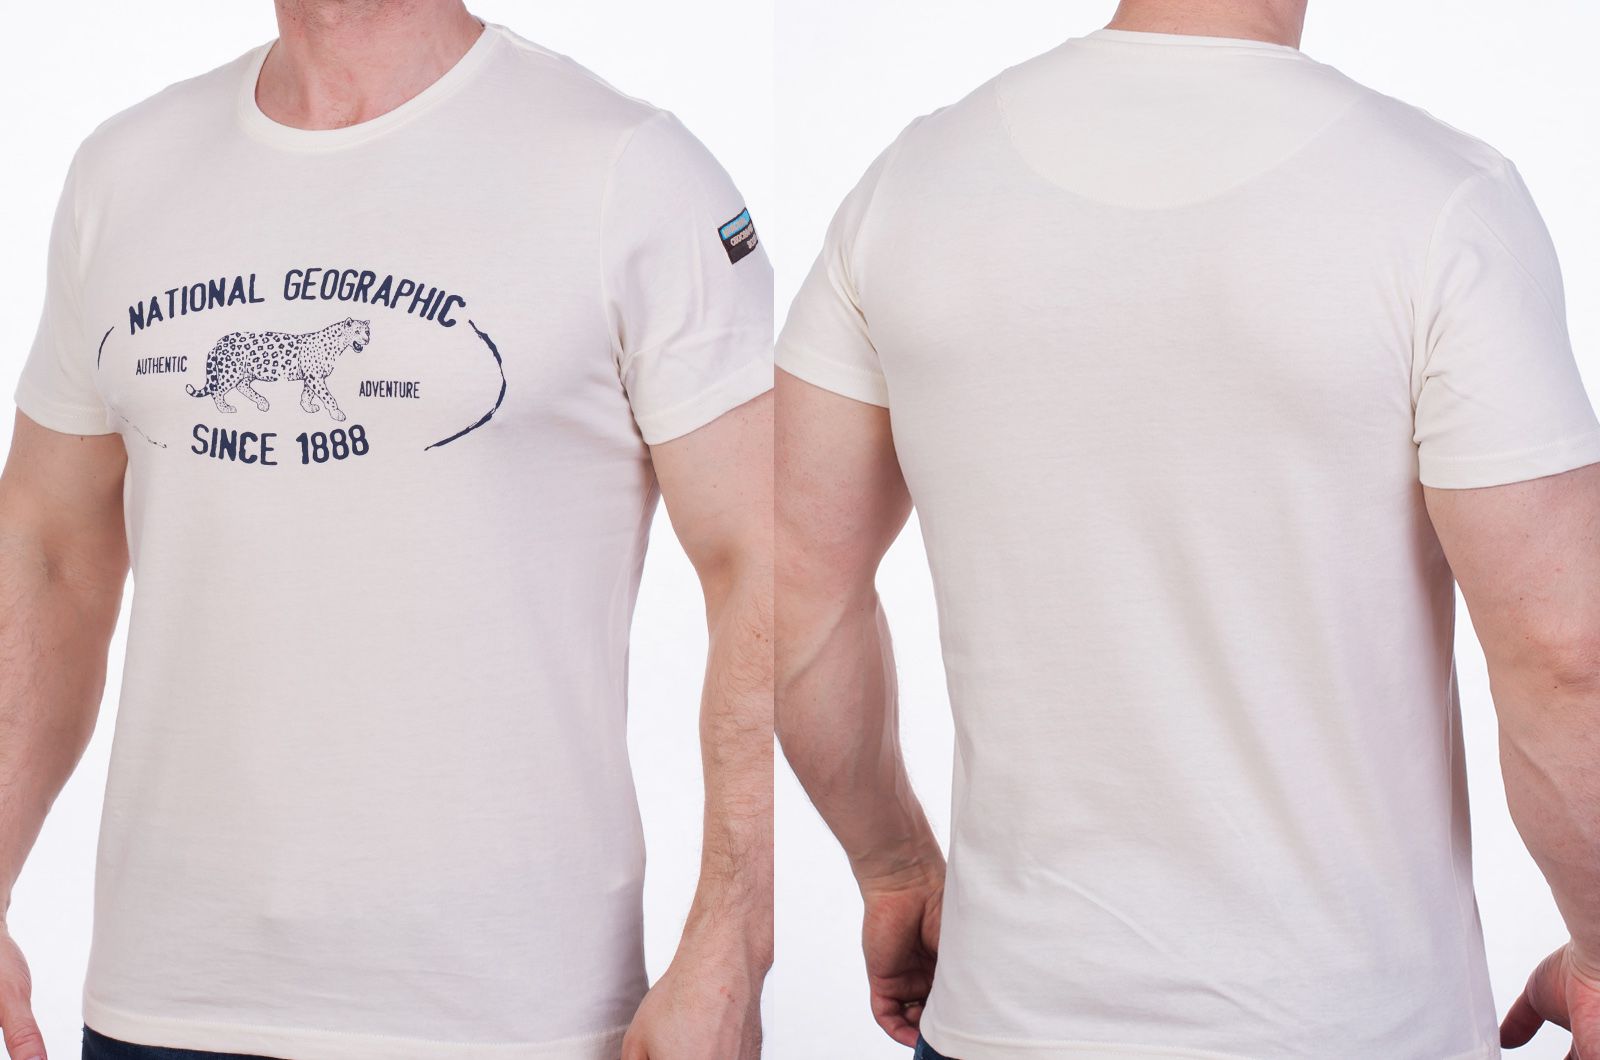 Купить футболку с нашивкой на рукаве онлайн по низкой цене